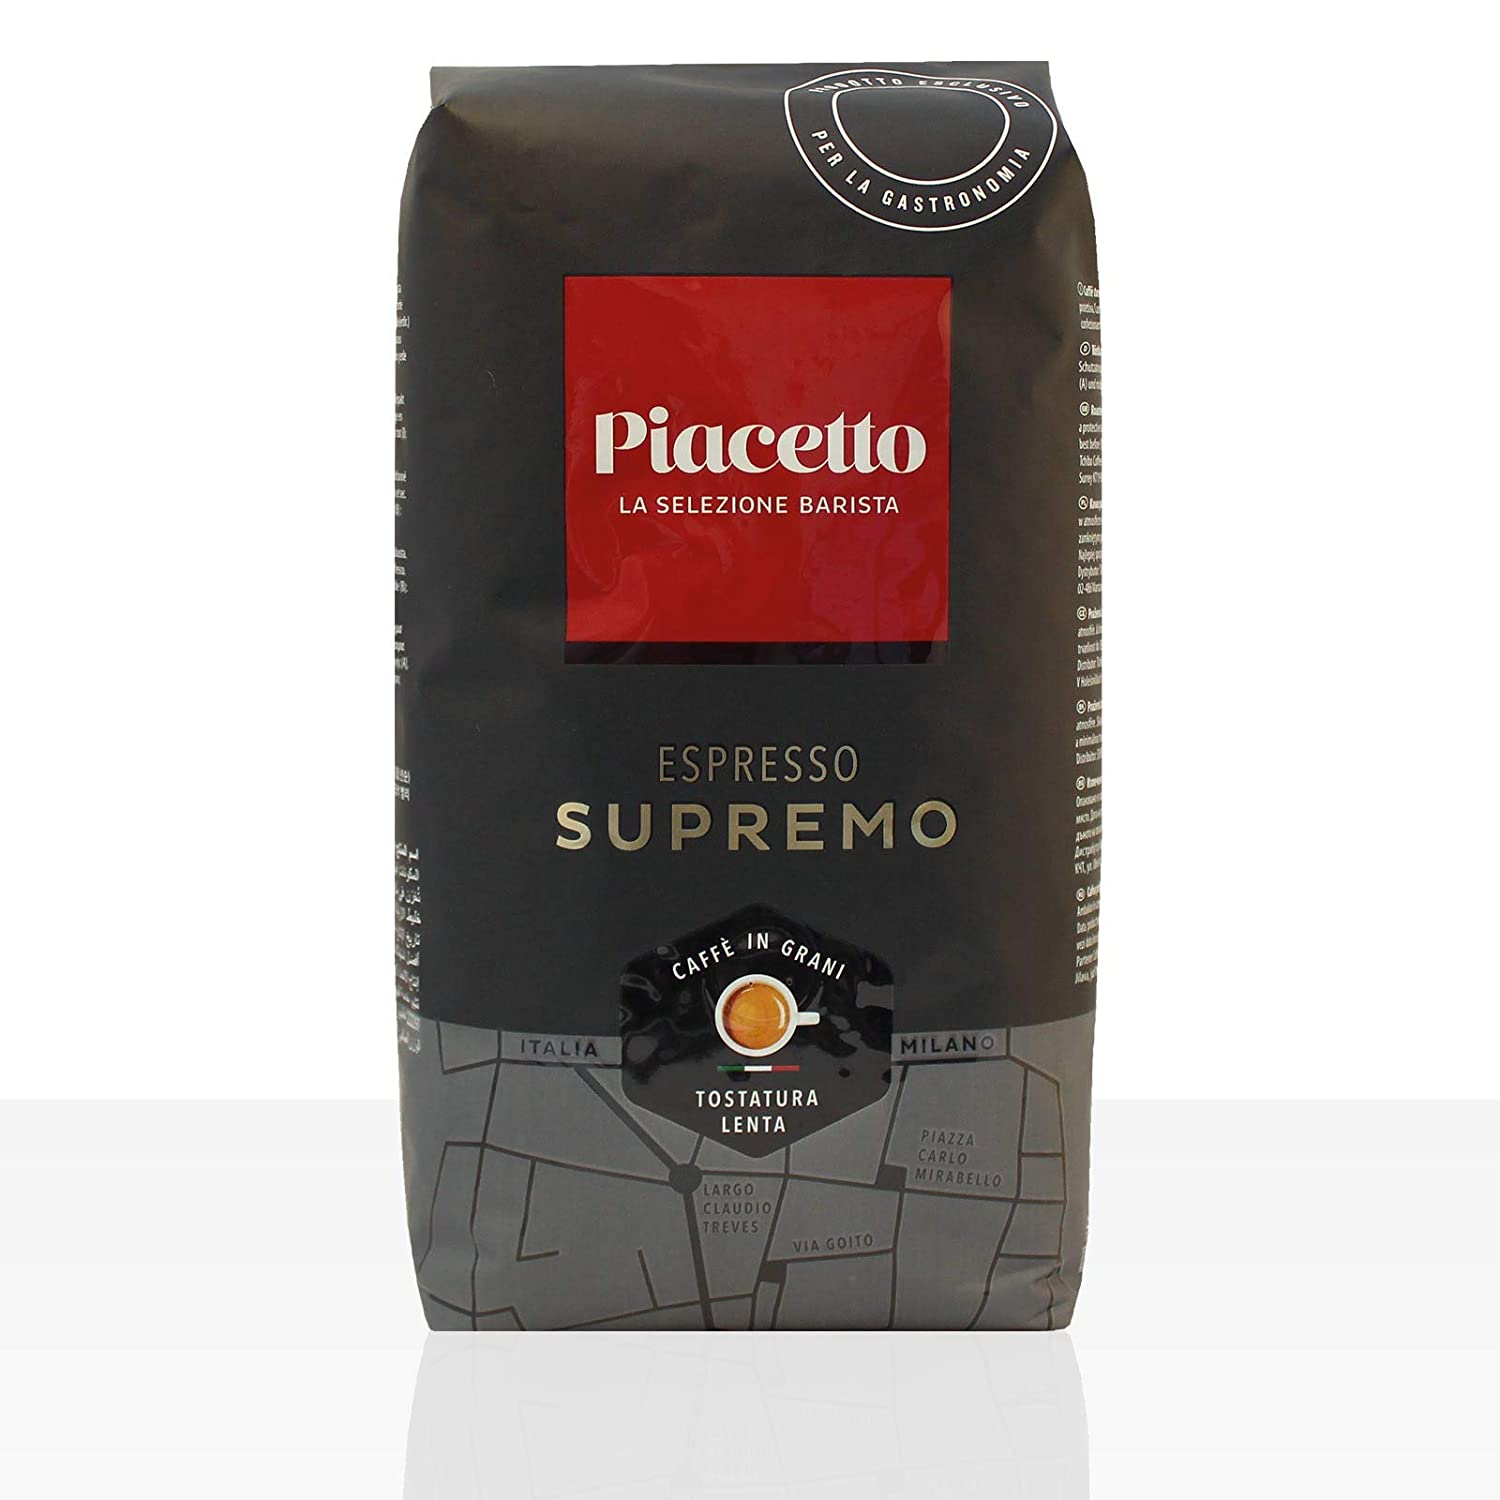 Tschibo Piacetto Supremo Espresso - 1kg ganze Kaffee-Bohne